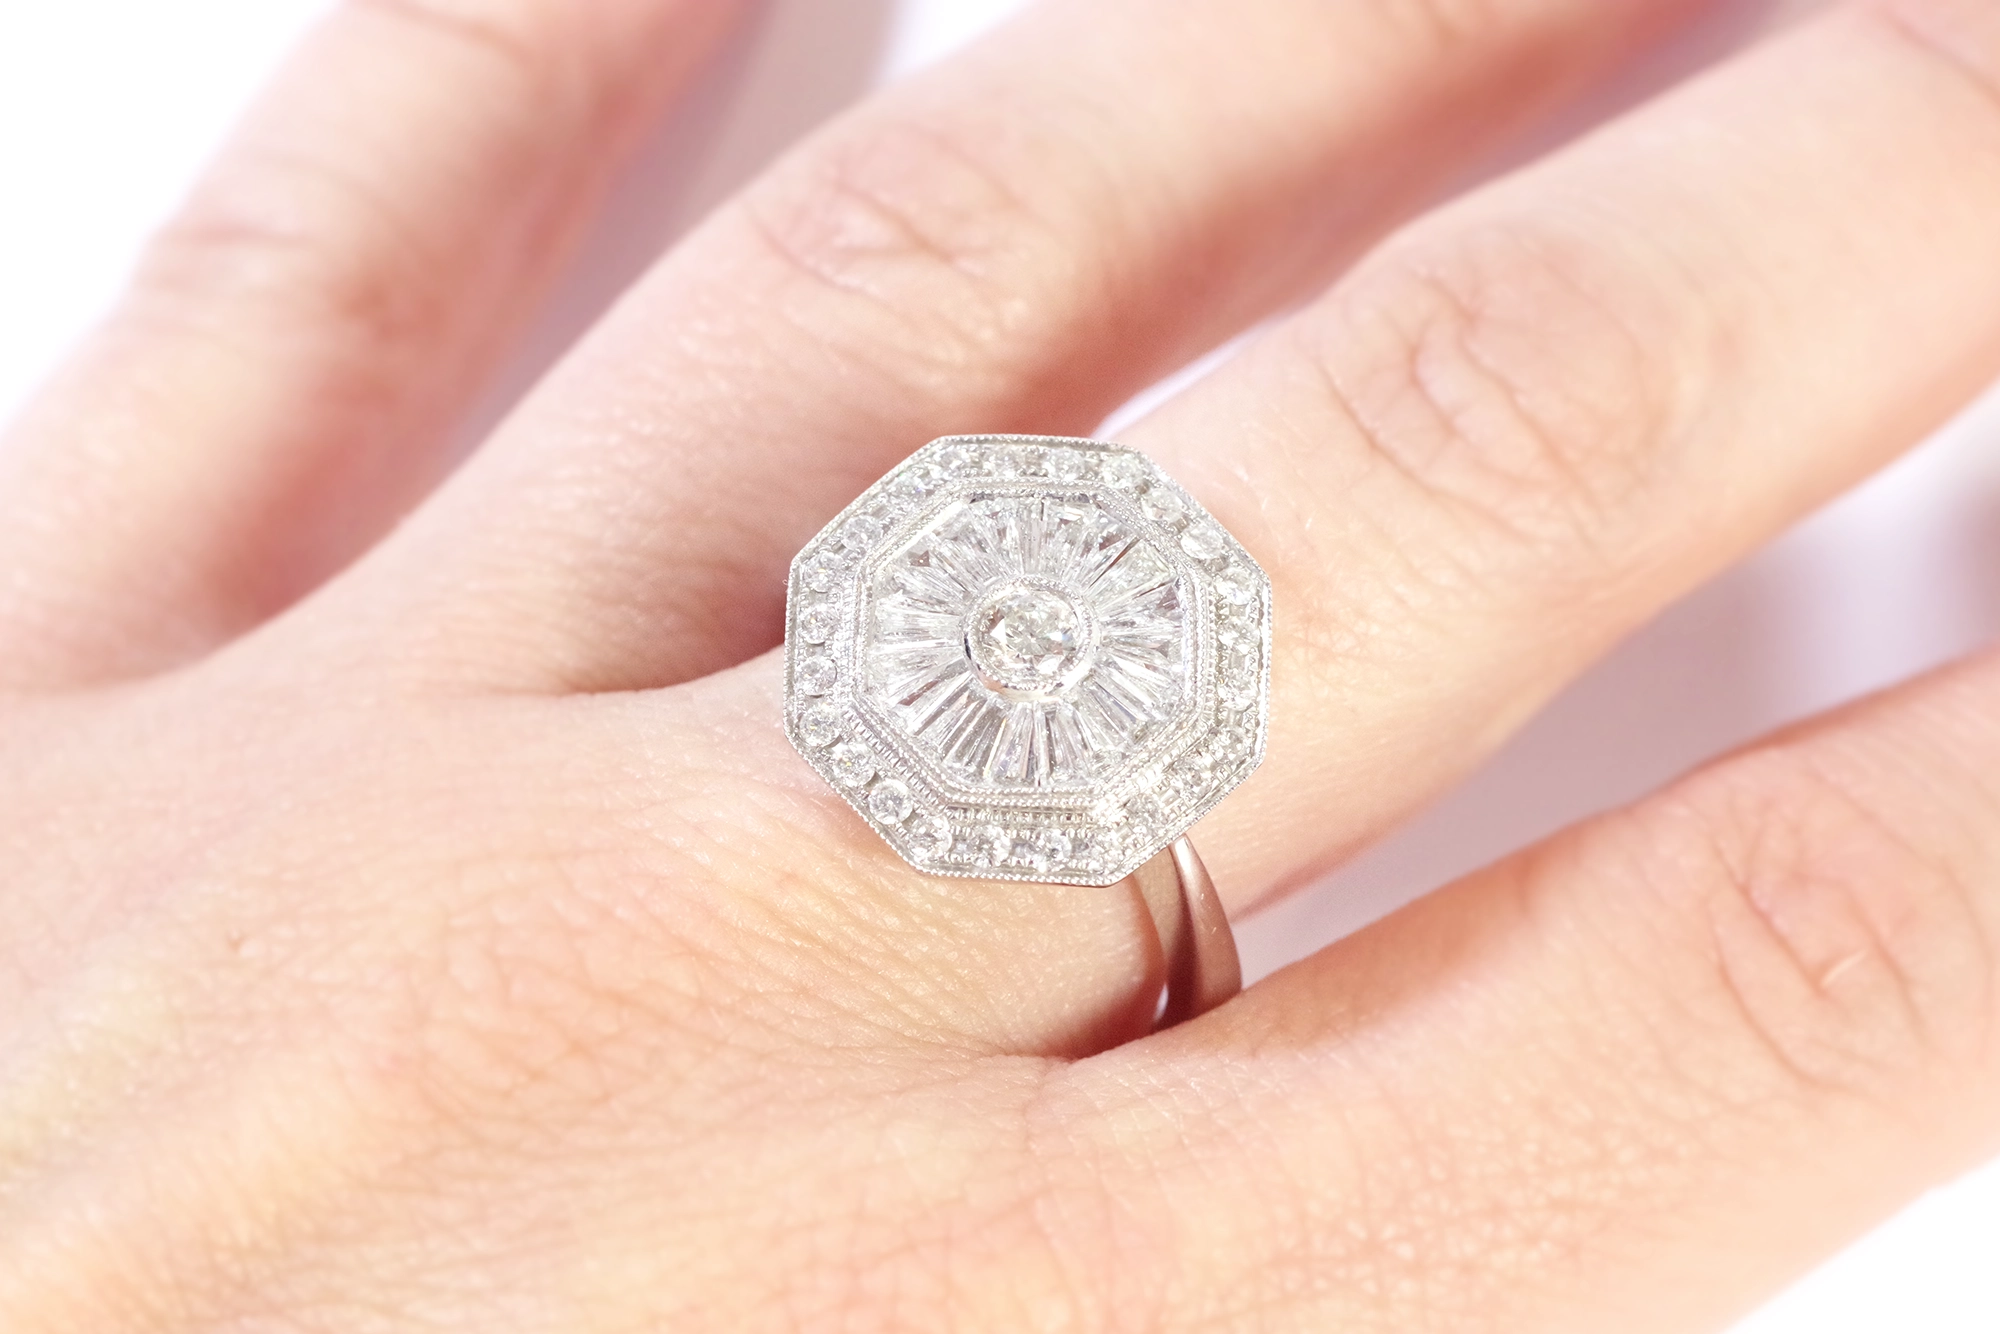 Antique Art Deco Style Diamond Ring 2.02ct in Platinum - Emerald Cut,  Milegrain Set | Pragnell